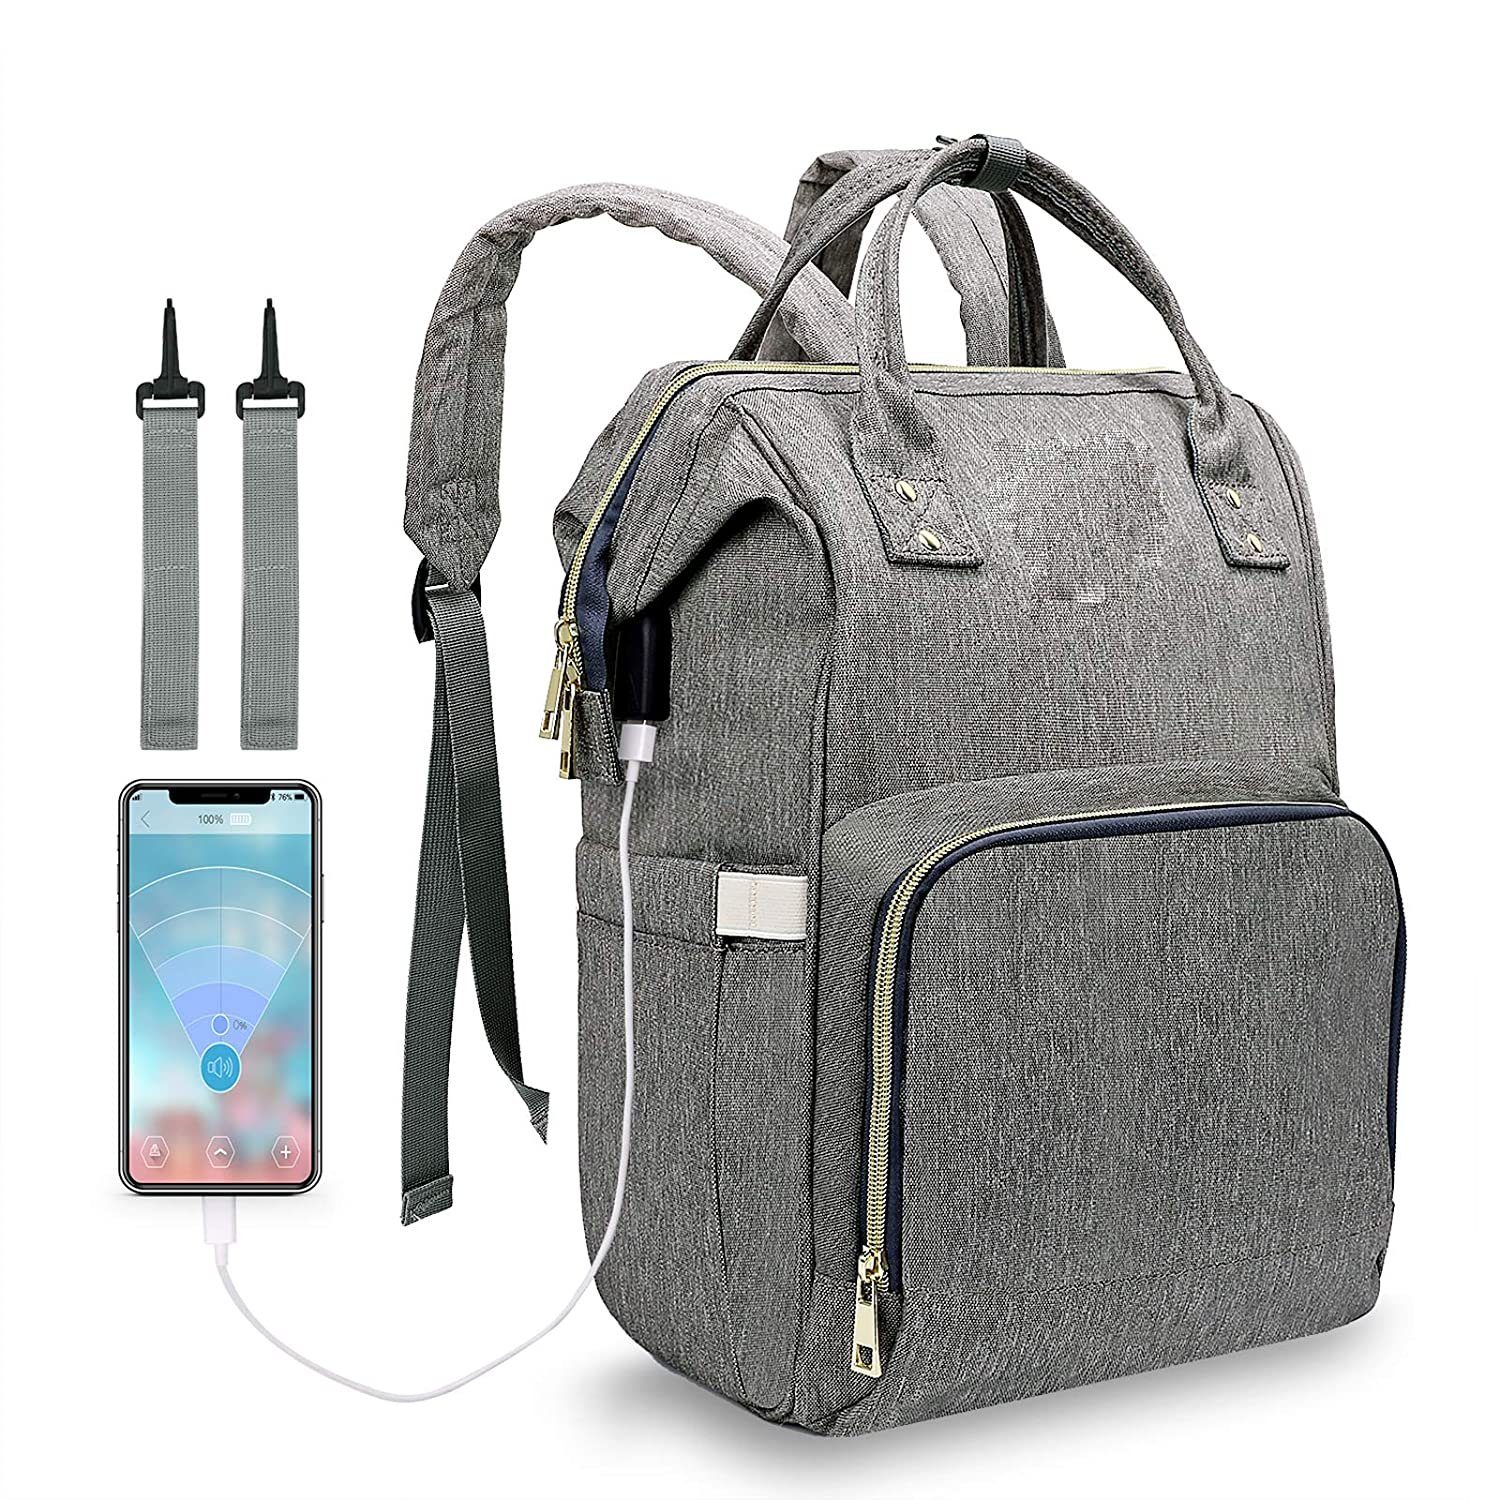 Diyarts Wickeltasche (multifunktionaler Wickelrucksack, mit USB-Ladeanschluss für unterwegs), Große Kapazität Babyrucksack Reiserucksack hochwertig und praktisch